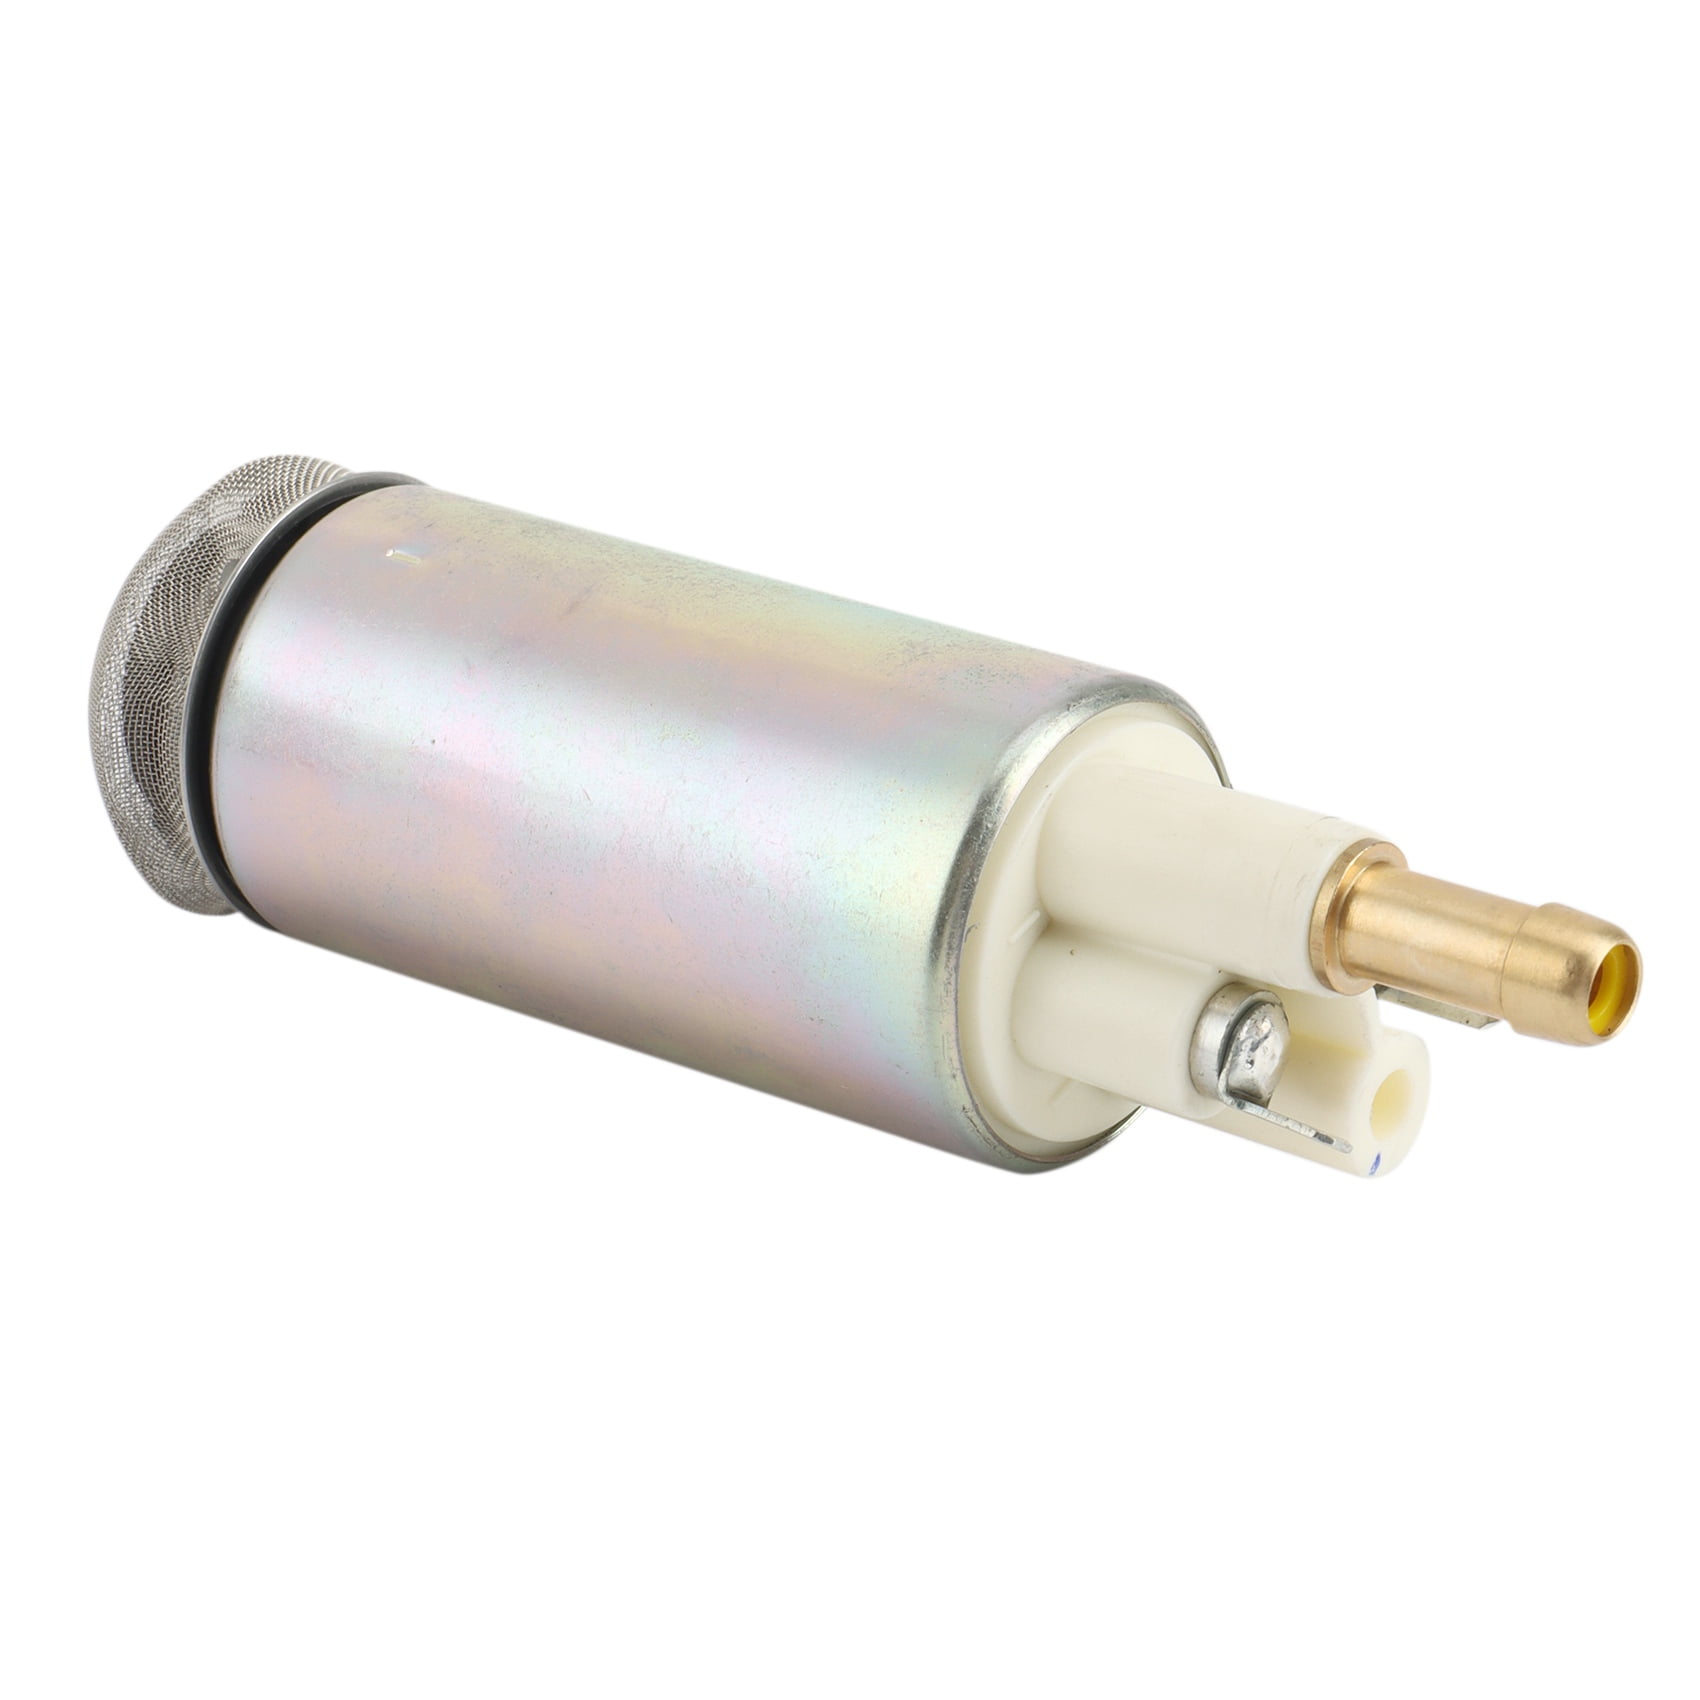 Low Pressure Lift Fuel Pump 880596T58 For Mercury Verado Quicksilver 4/6cy 